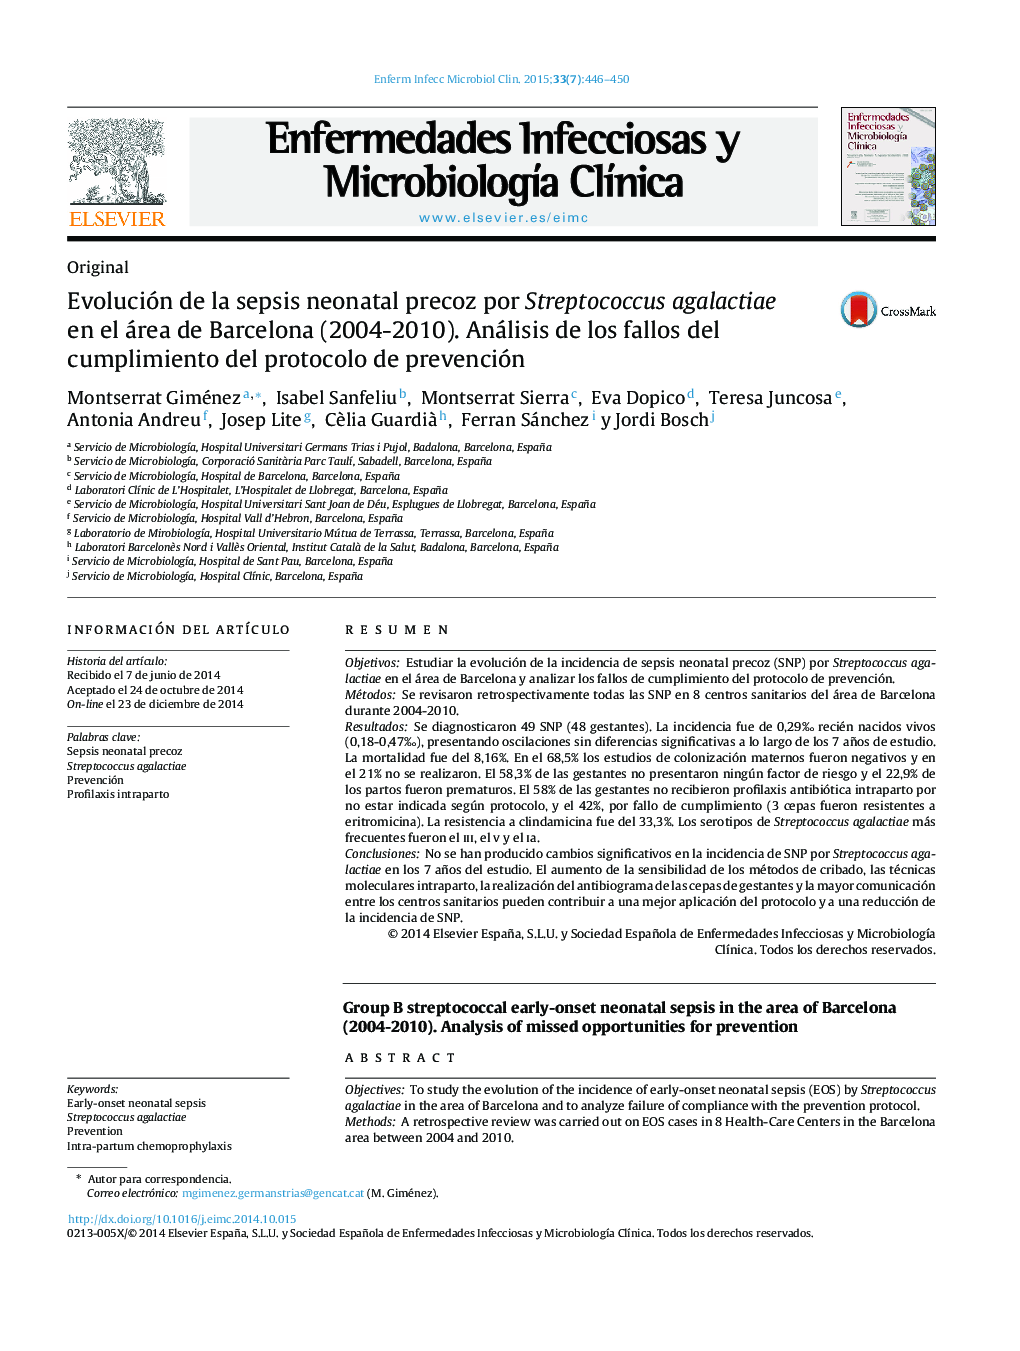 Evolución de la sepsis neonatal precoz por Streptococcus agalactiae en el área de Barcelona (2004-2010). Análisis de los fallos del cumplimiento del protocolo de prevención